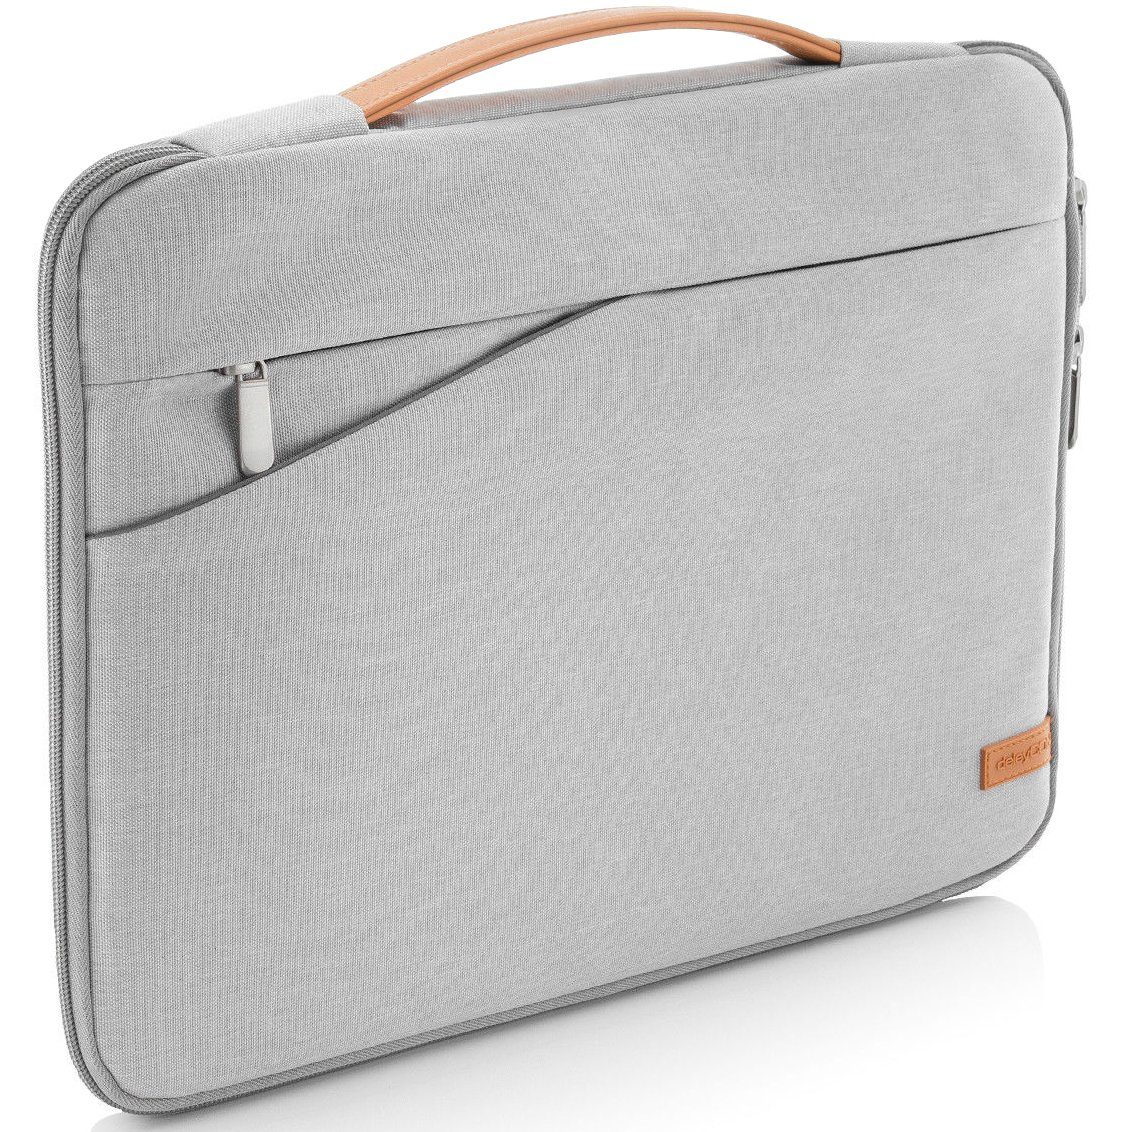 deleyCON Businesstasche deleyCON Laptop Tasche bis 17“ Zoll (43,2cm)  Notebook Netbook MAC, 2 Seitentaschen für Dokumente & Zubehör (1x inkl.  Reißverschluss)